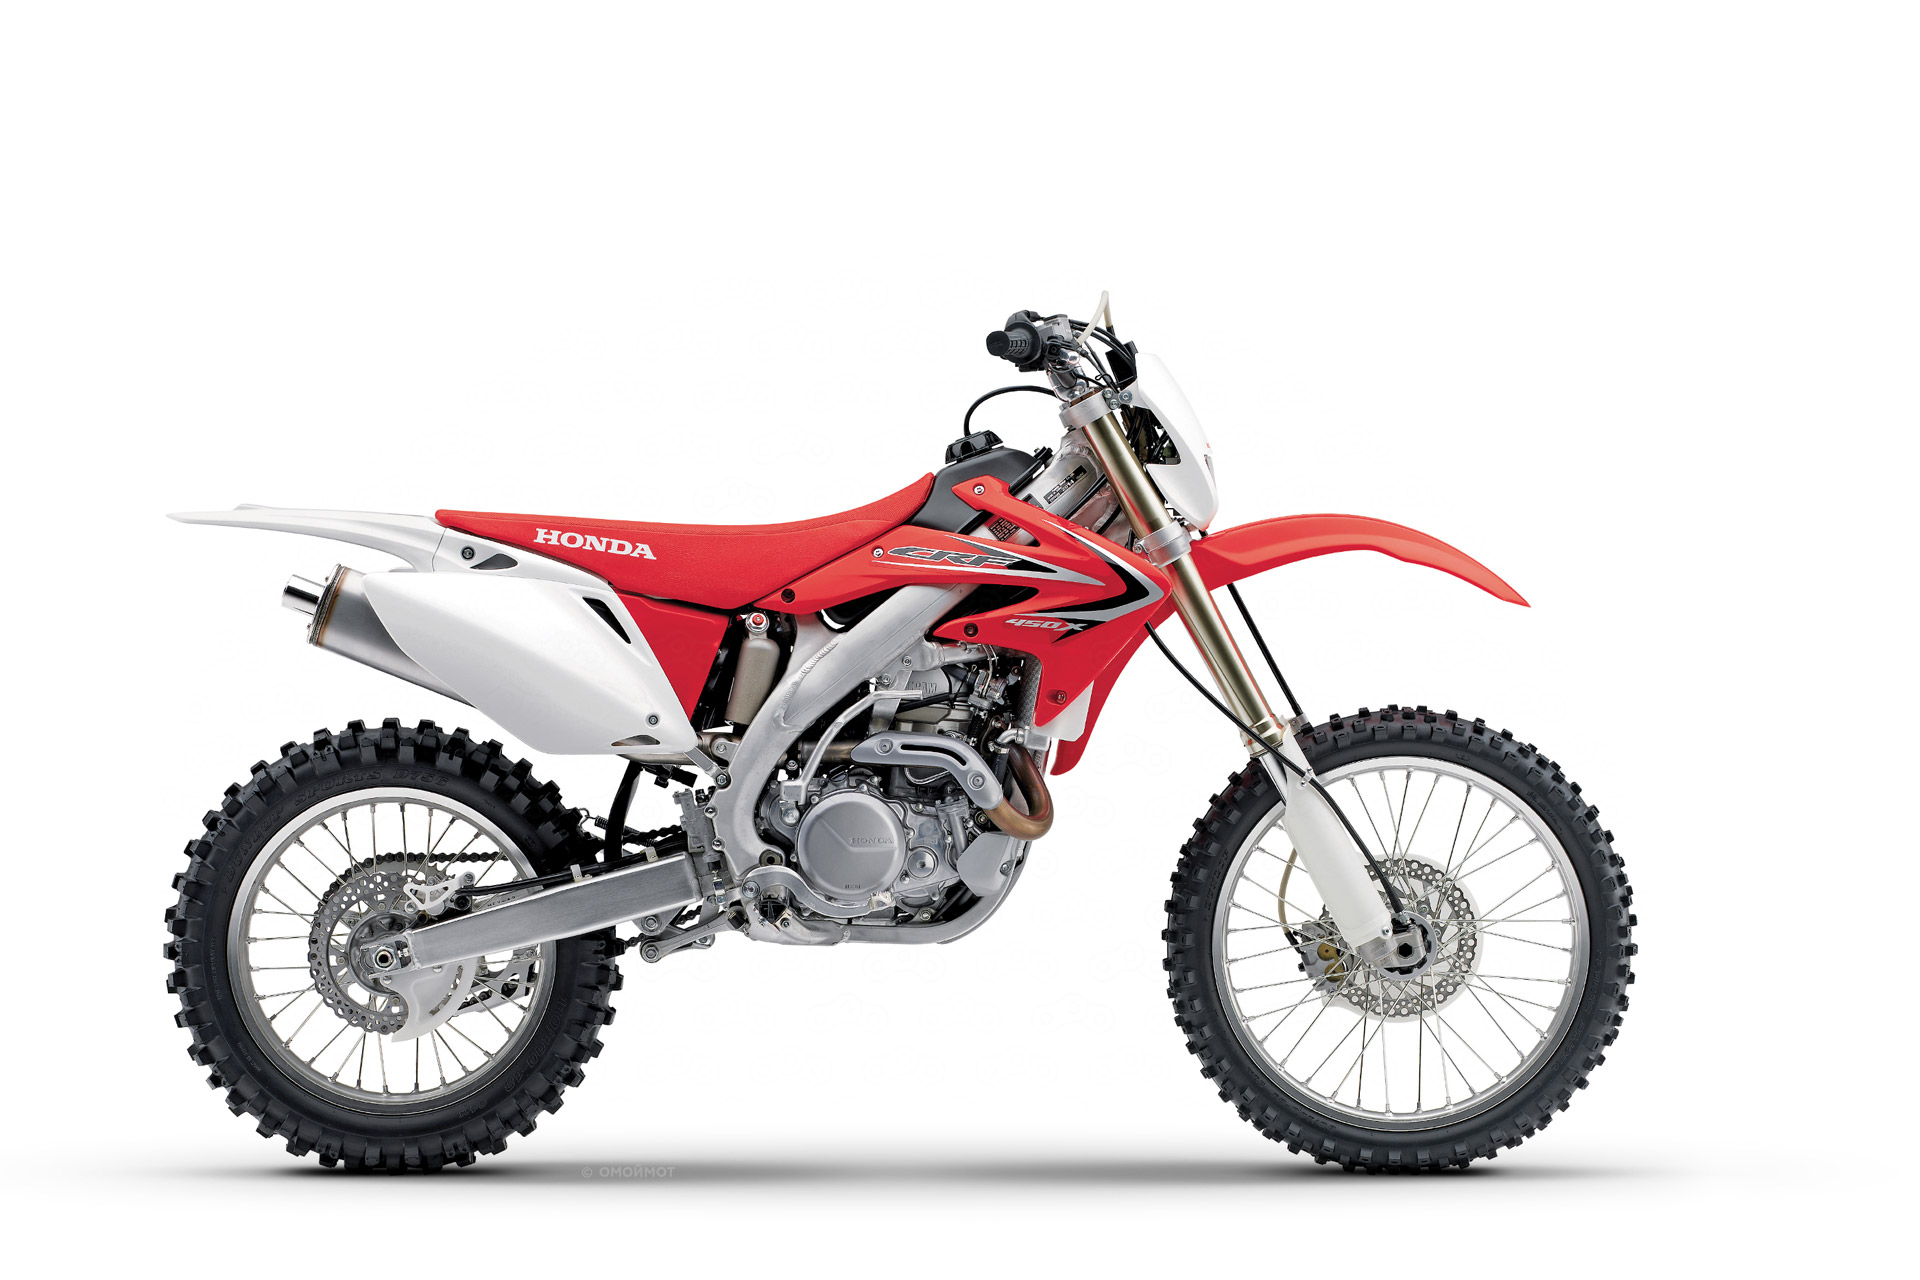 Мотоцикл Honda CRF450X цена, фото и характеристики нового мотоцикла